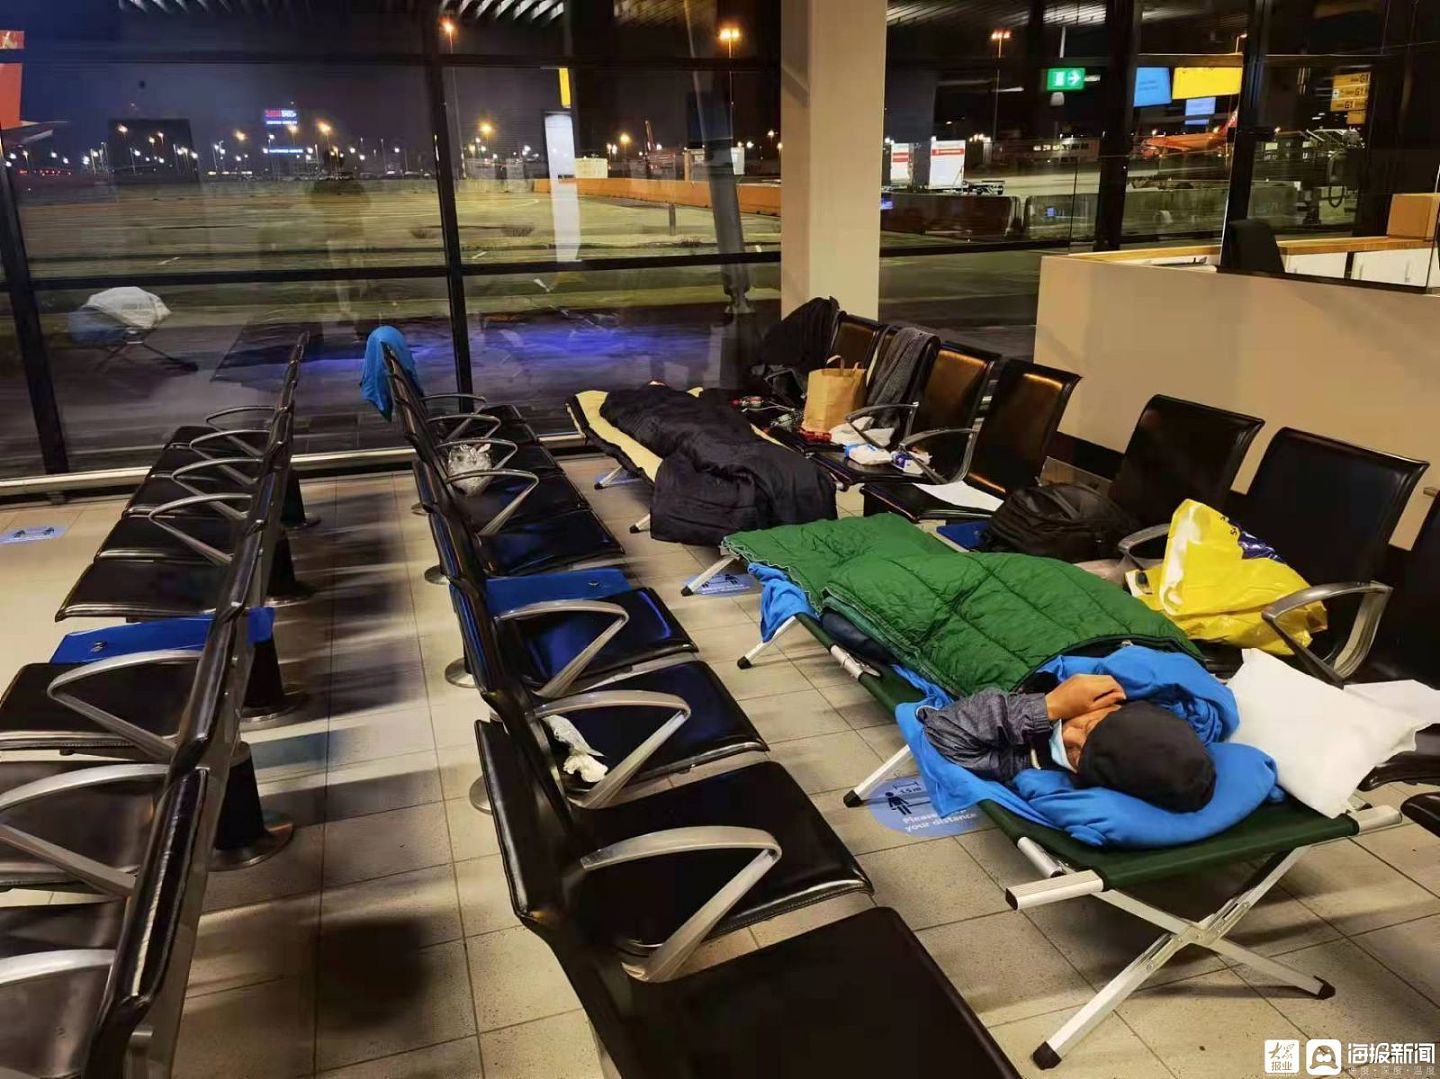 海报直击丨一名海员的艰难回国路：因疫情滞留荷兰机场近两月 又遇俄乌冲突致回国航班取消